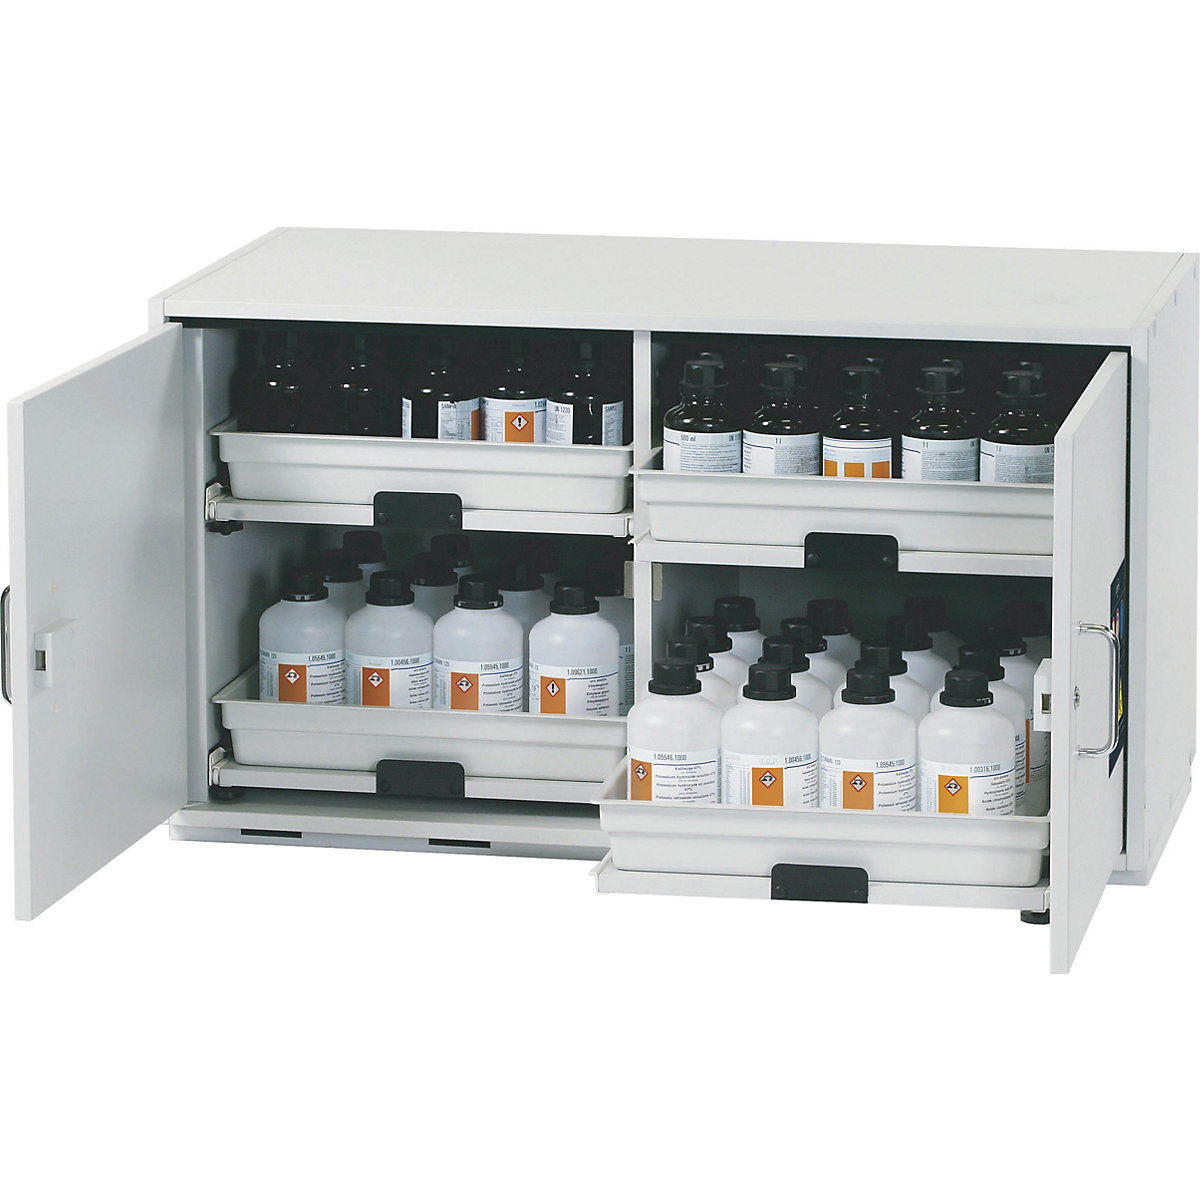 Podstavná skříň na nebezpečné látky pro kyseliny a louhy – asecos, 2 dveře, v x š x h 600 x 1100 x 570 mm, 4 výsuvy-3